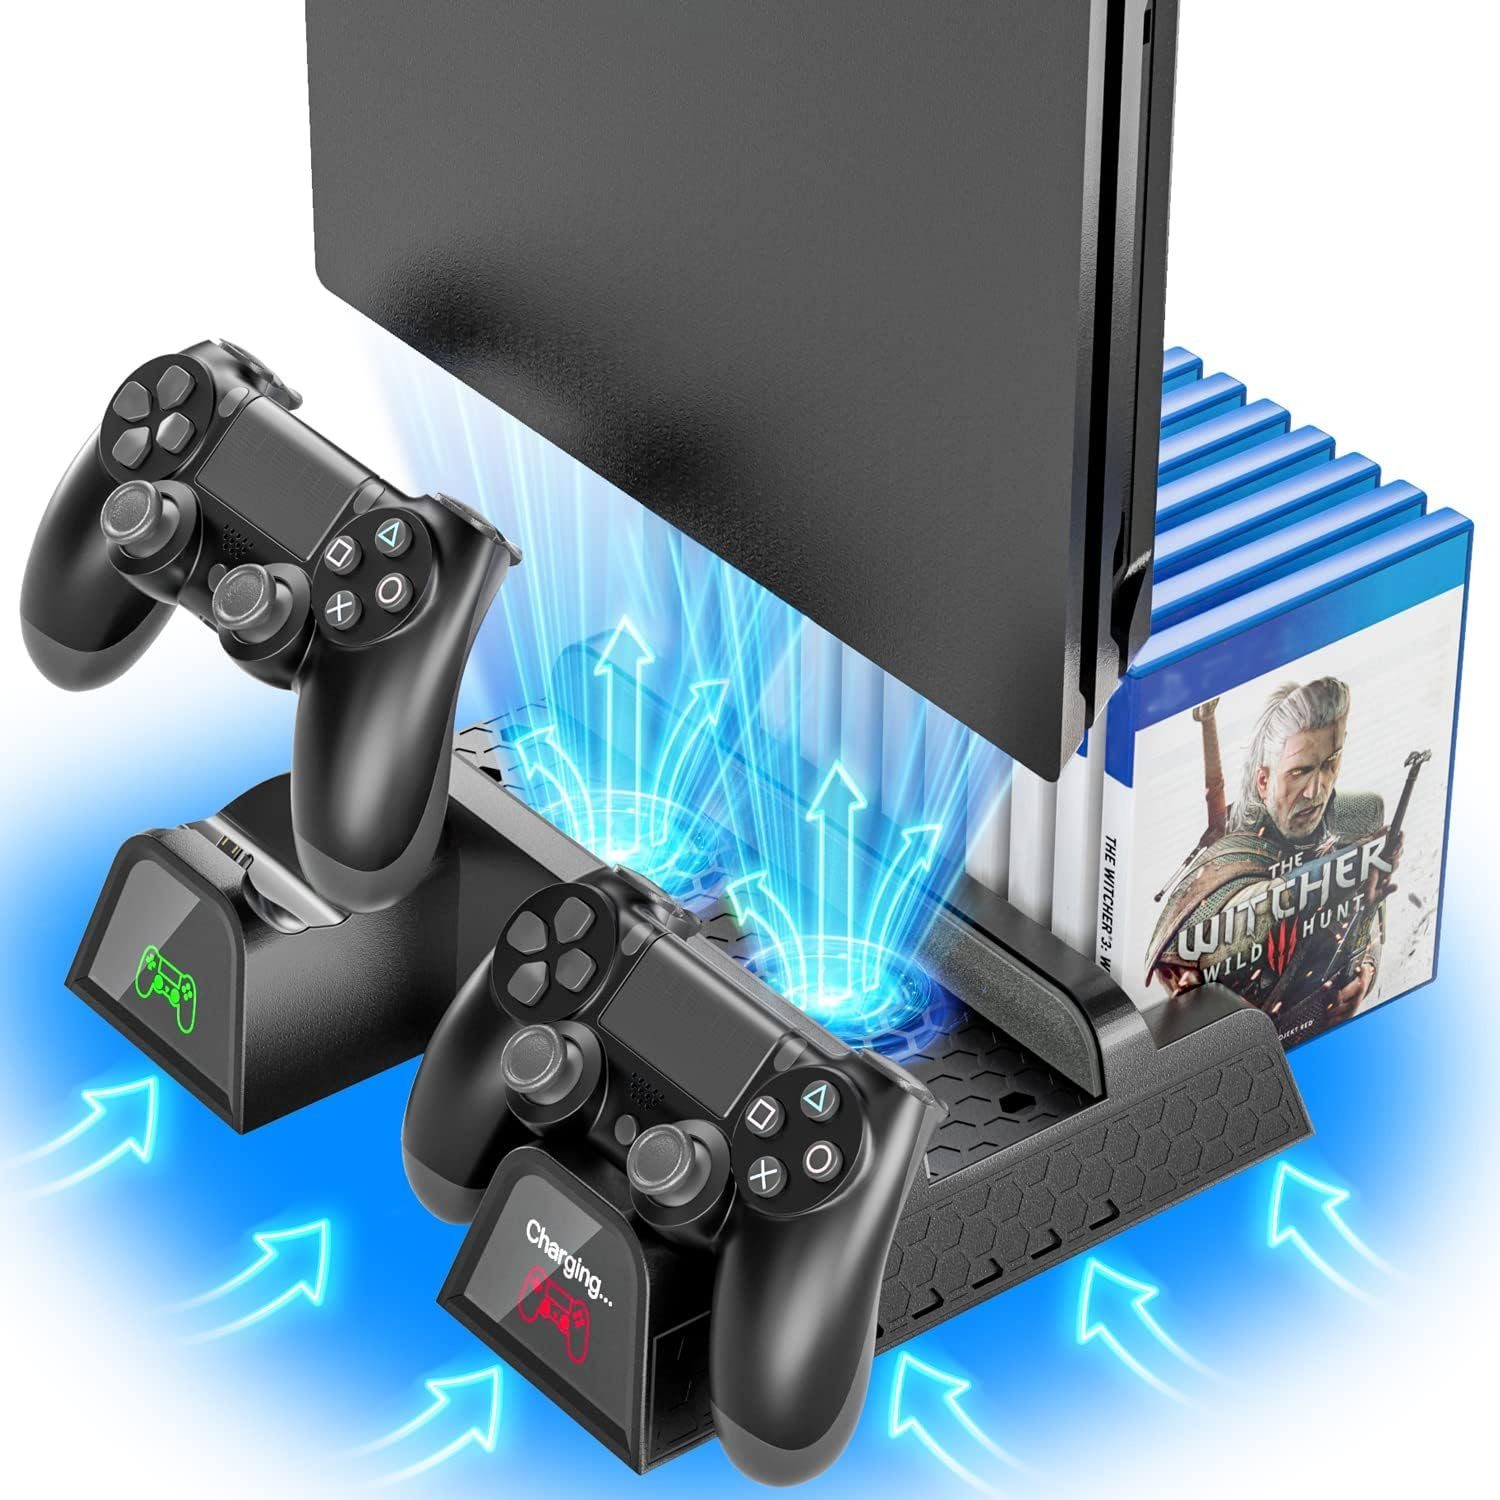 Haiaveng PS4 Standfuß, Kühler mit Controller Ladestation für PS4/PS4  Pro/Slim Konsolen-Standfuß, (Playstation 4/PS4 Pro/Slim, PS4, PS4  Halterung, Ständer, Lüfter mit 12 Spiele Lagerung)